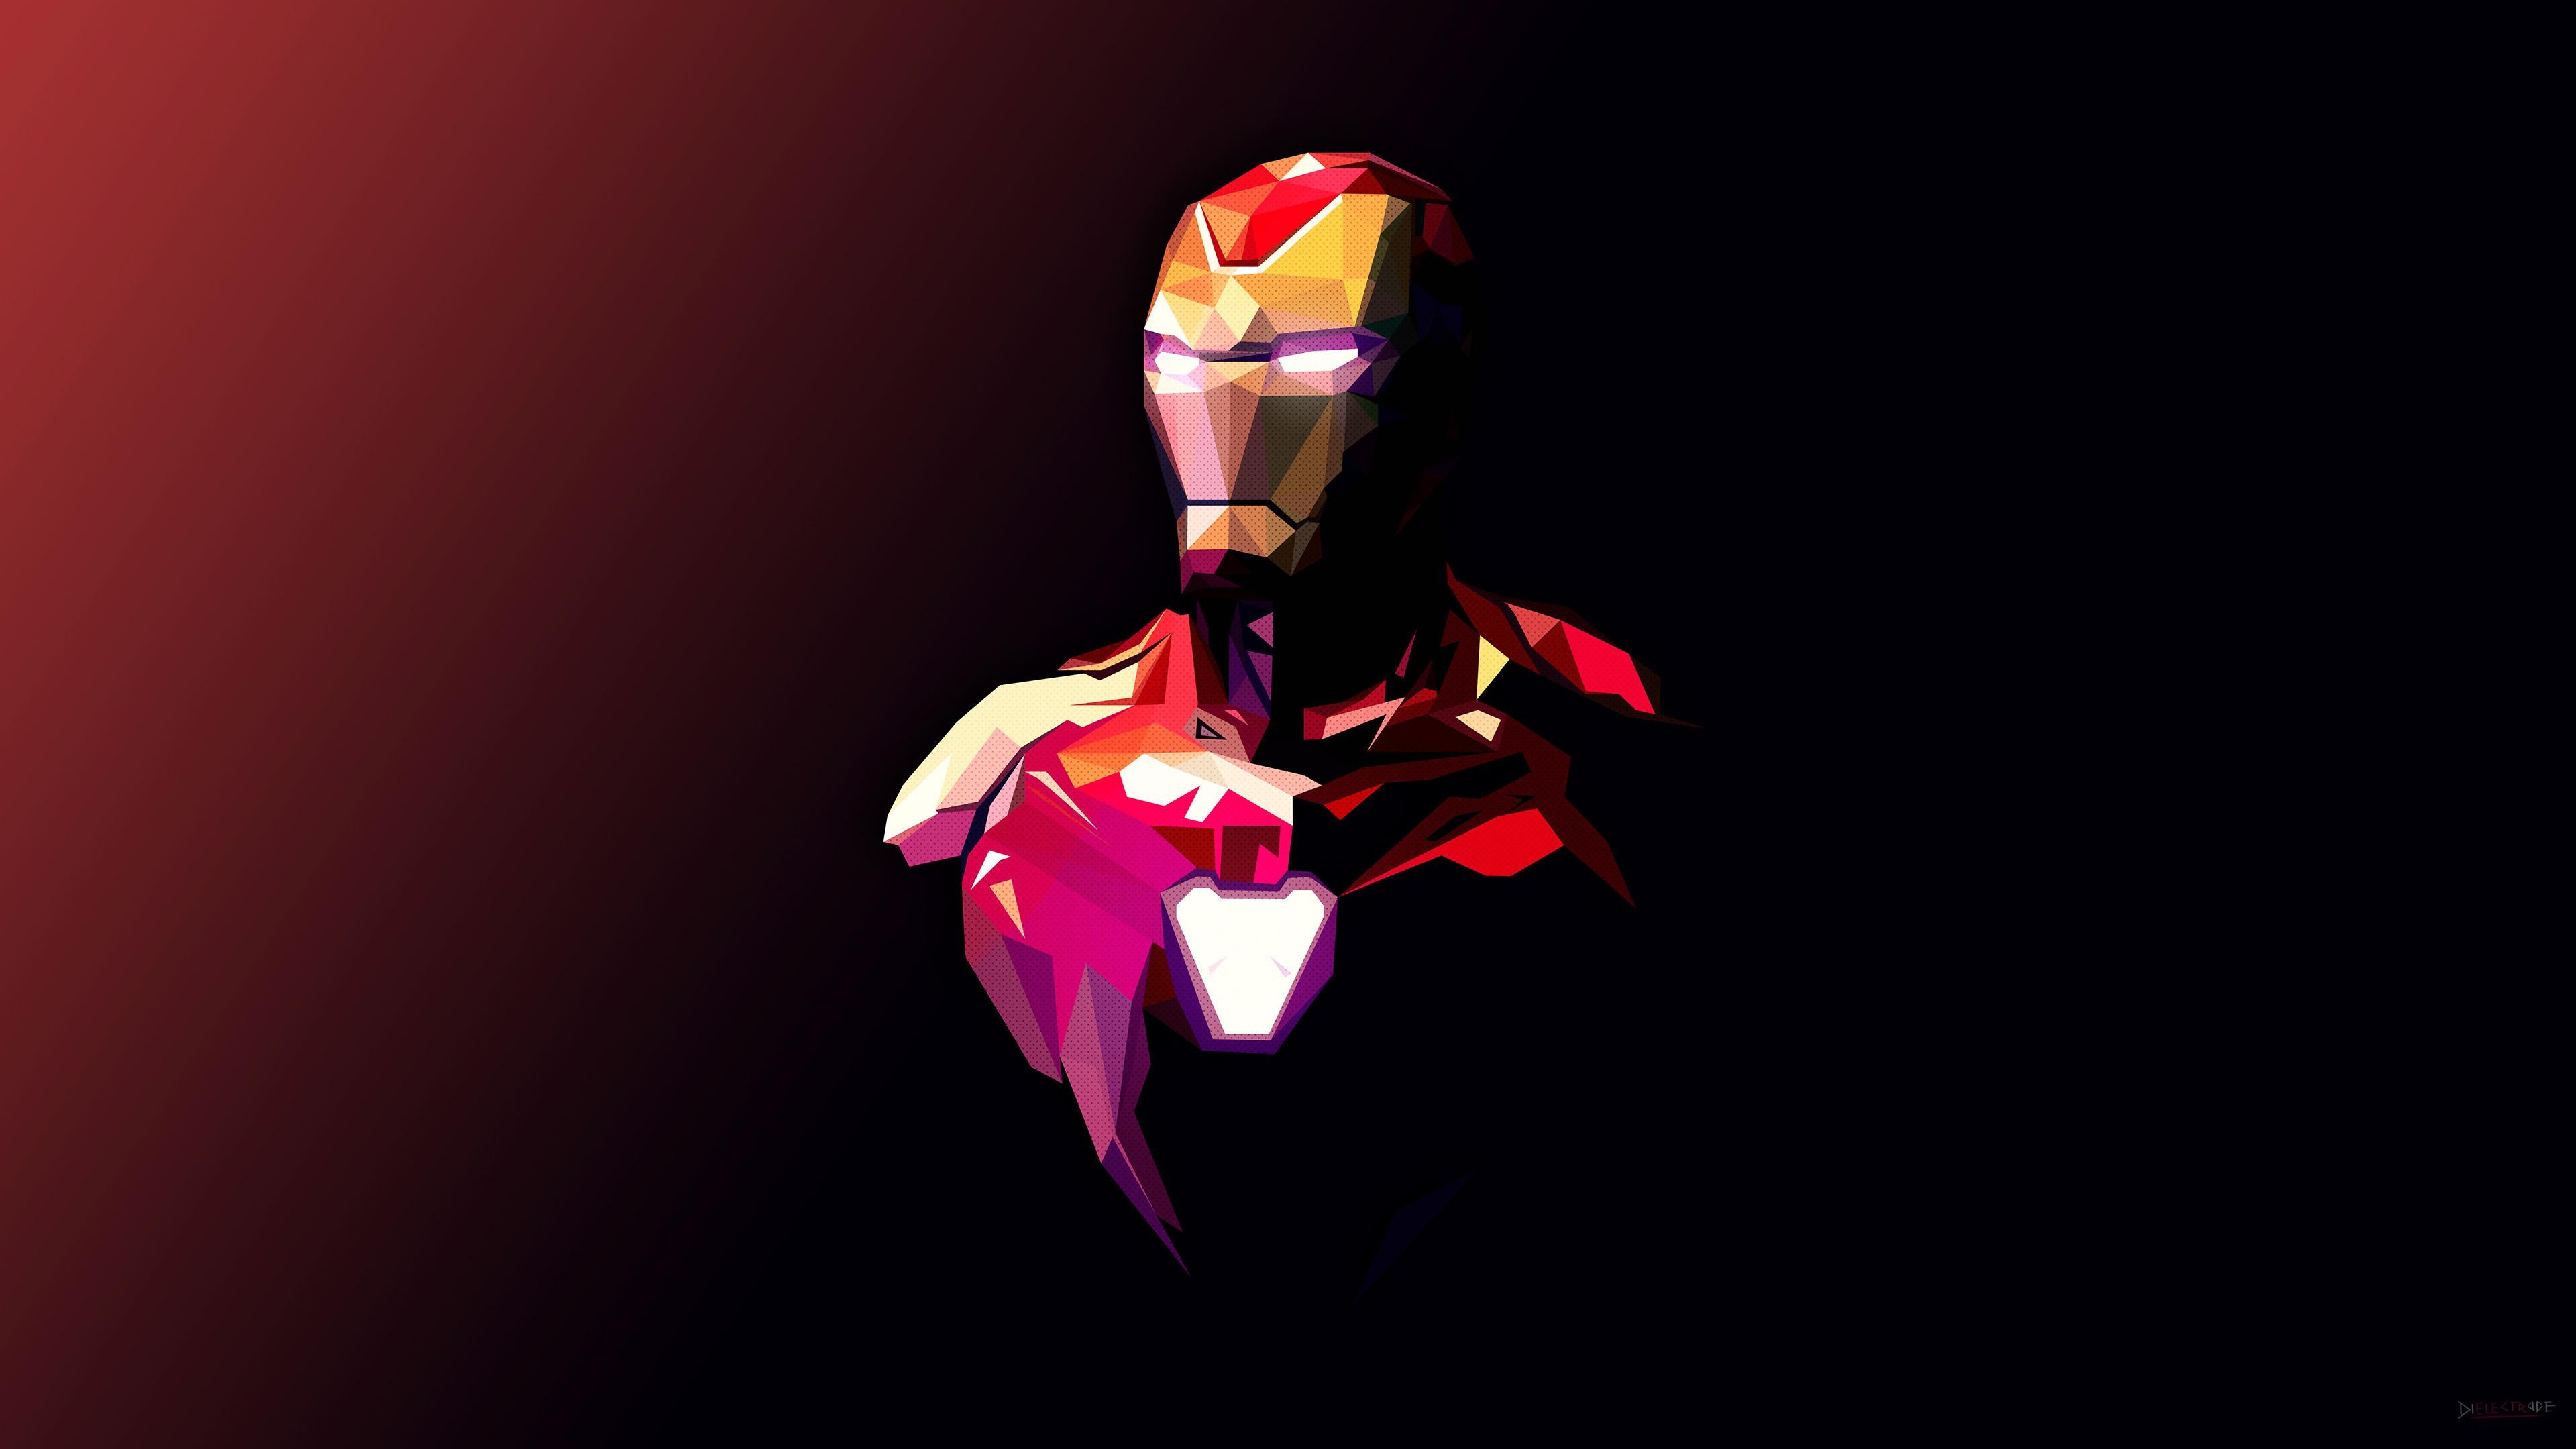 Download mobile wallpaper Iron Man, Movie, Tony Stark, The Avengers, Avengers Endgame for free.